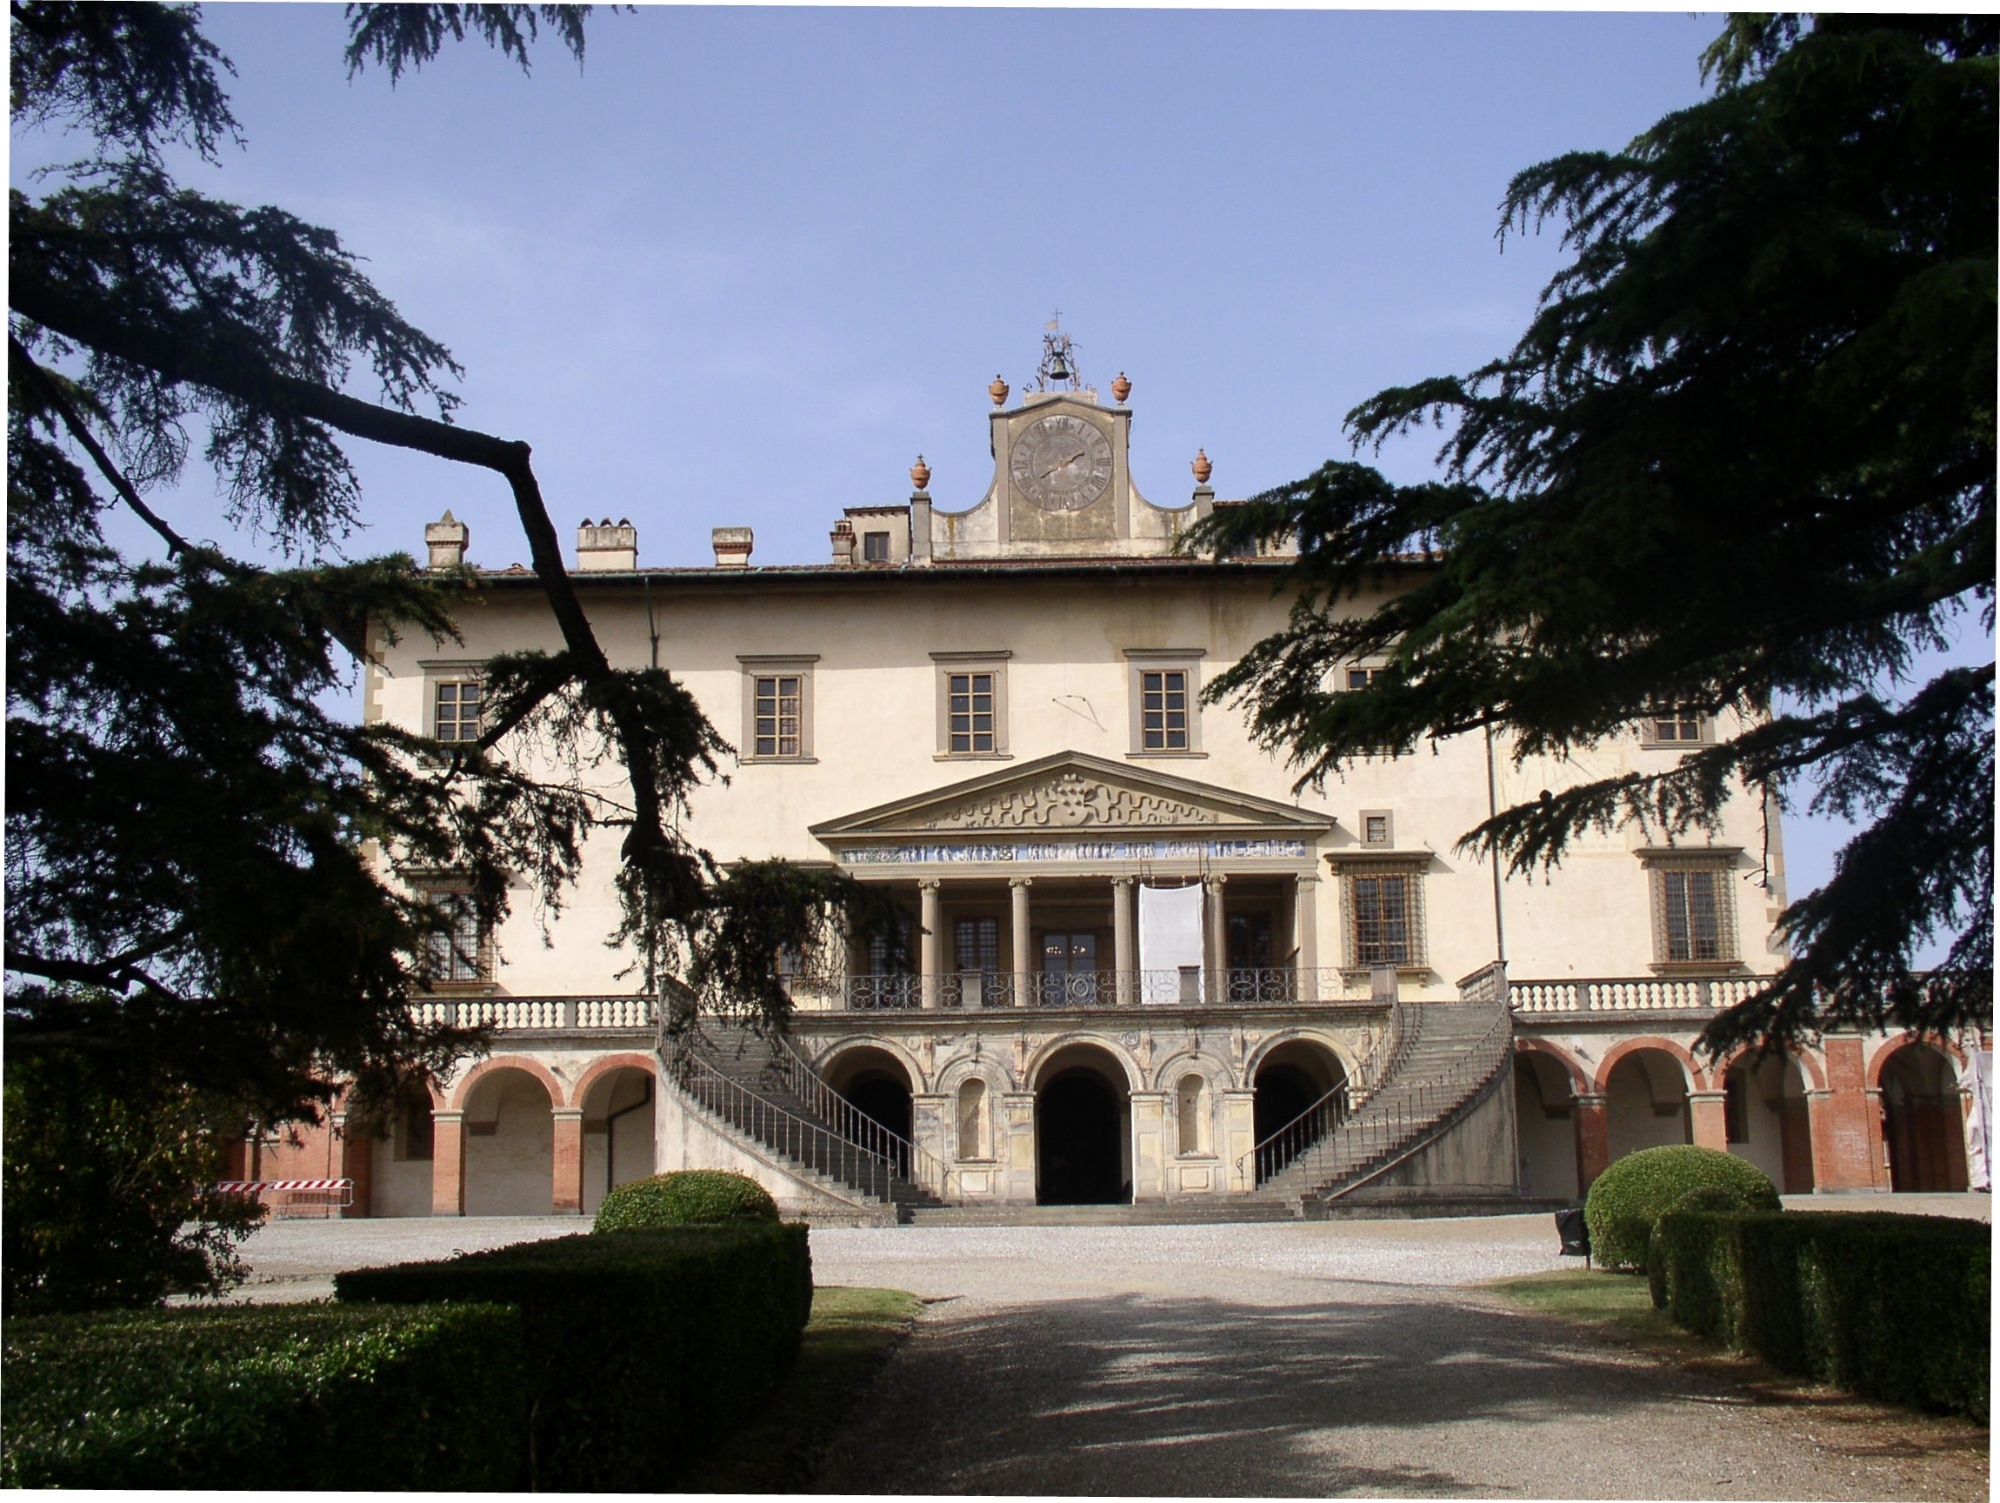 Villa Medici in Poggio a Caiano